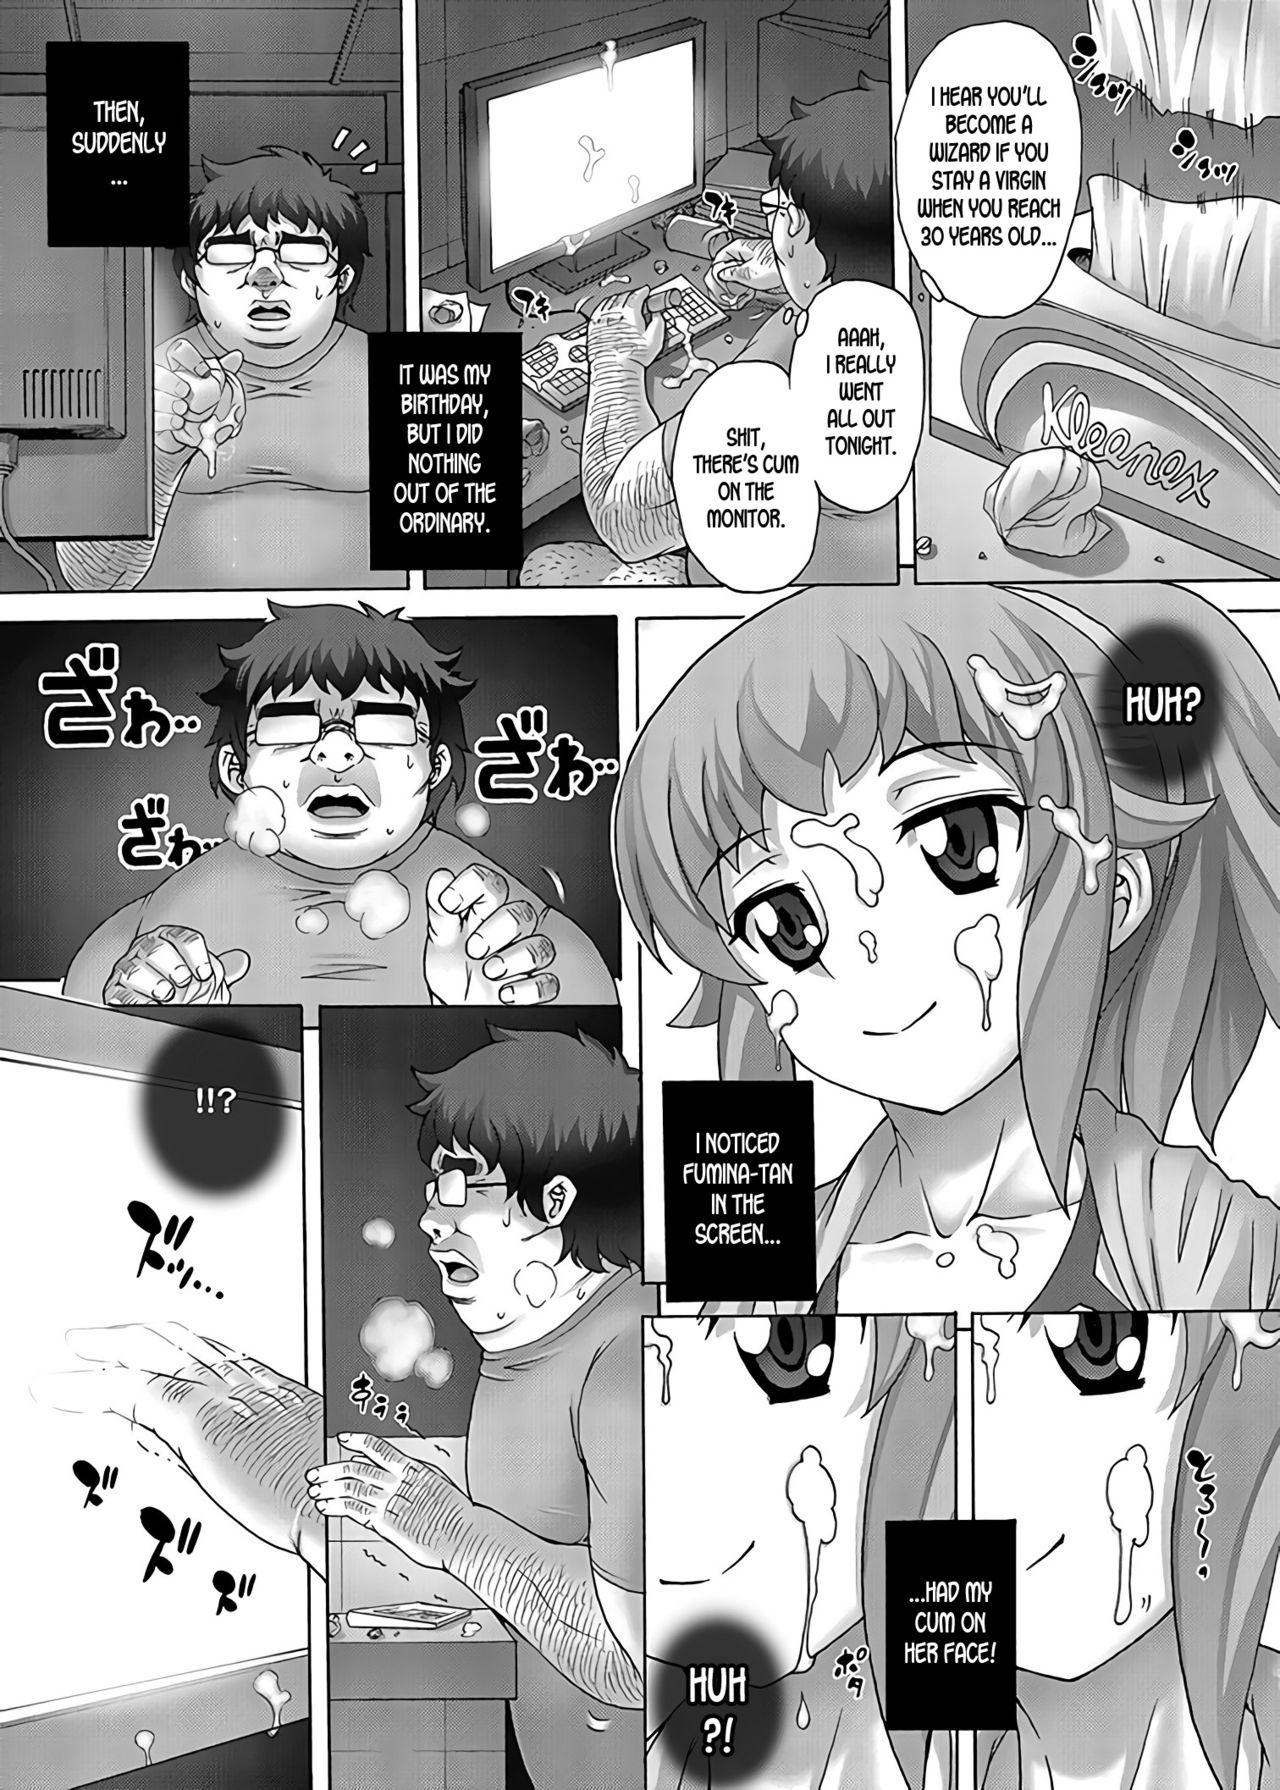 Pegging Anime Yome Ichijiteishi! Monitor-nai no Yome ni Eroi Koto o Shimakuru Hanashi - Gundam build fighters try Tease - Page 6